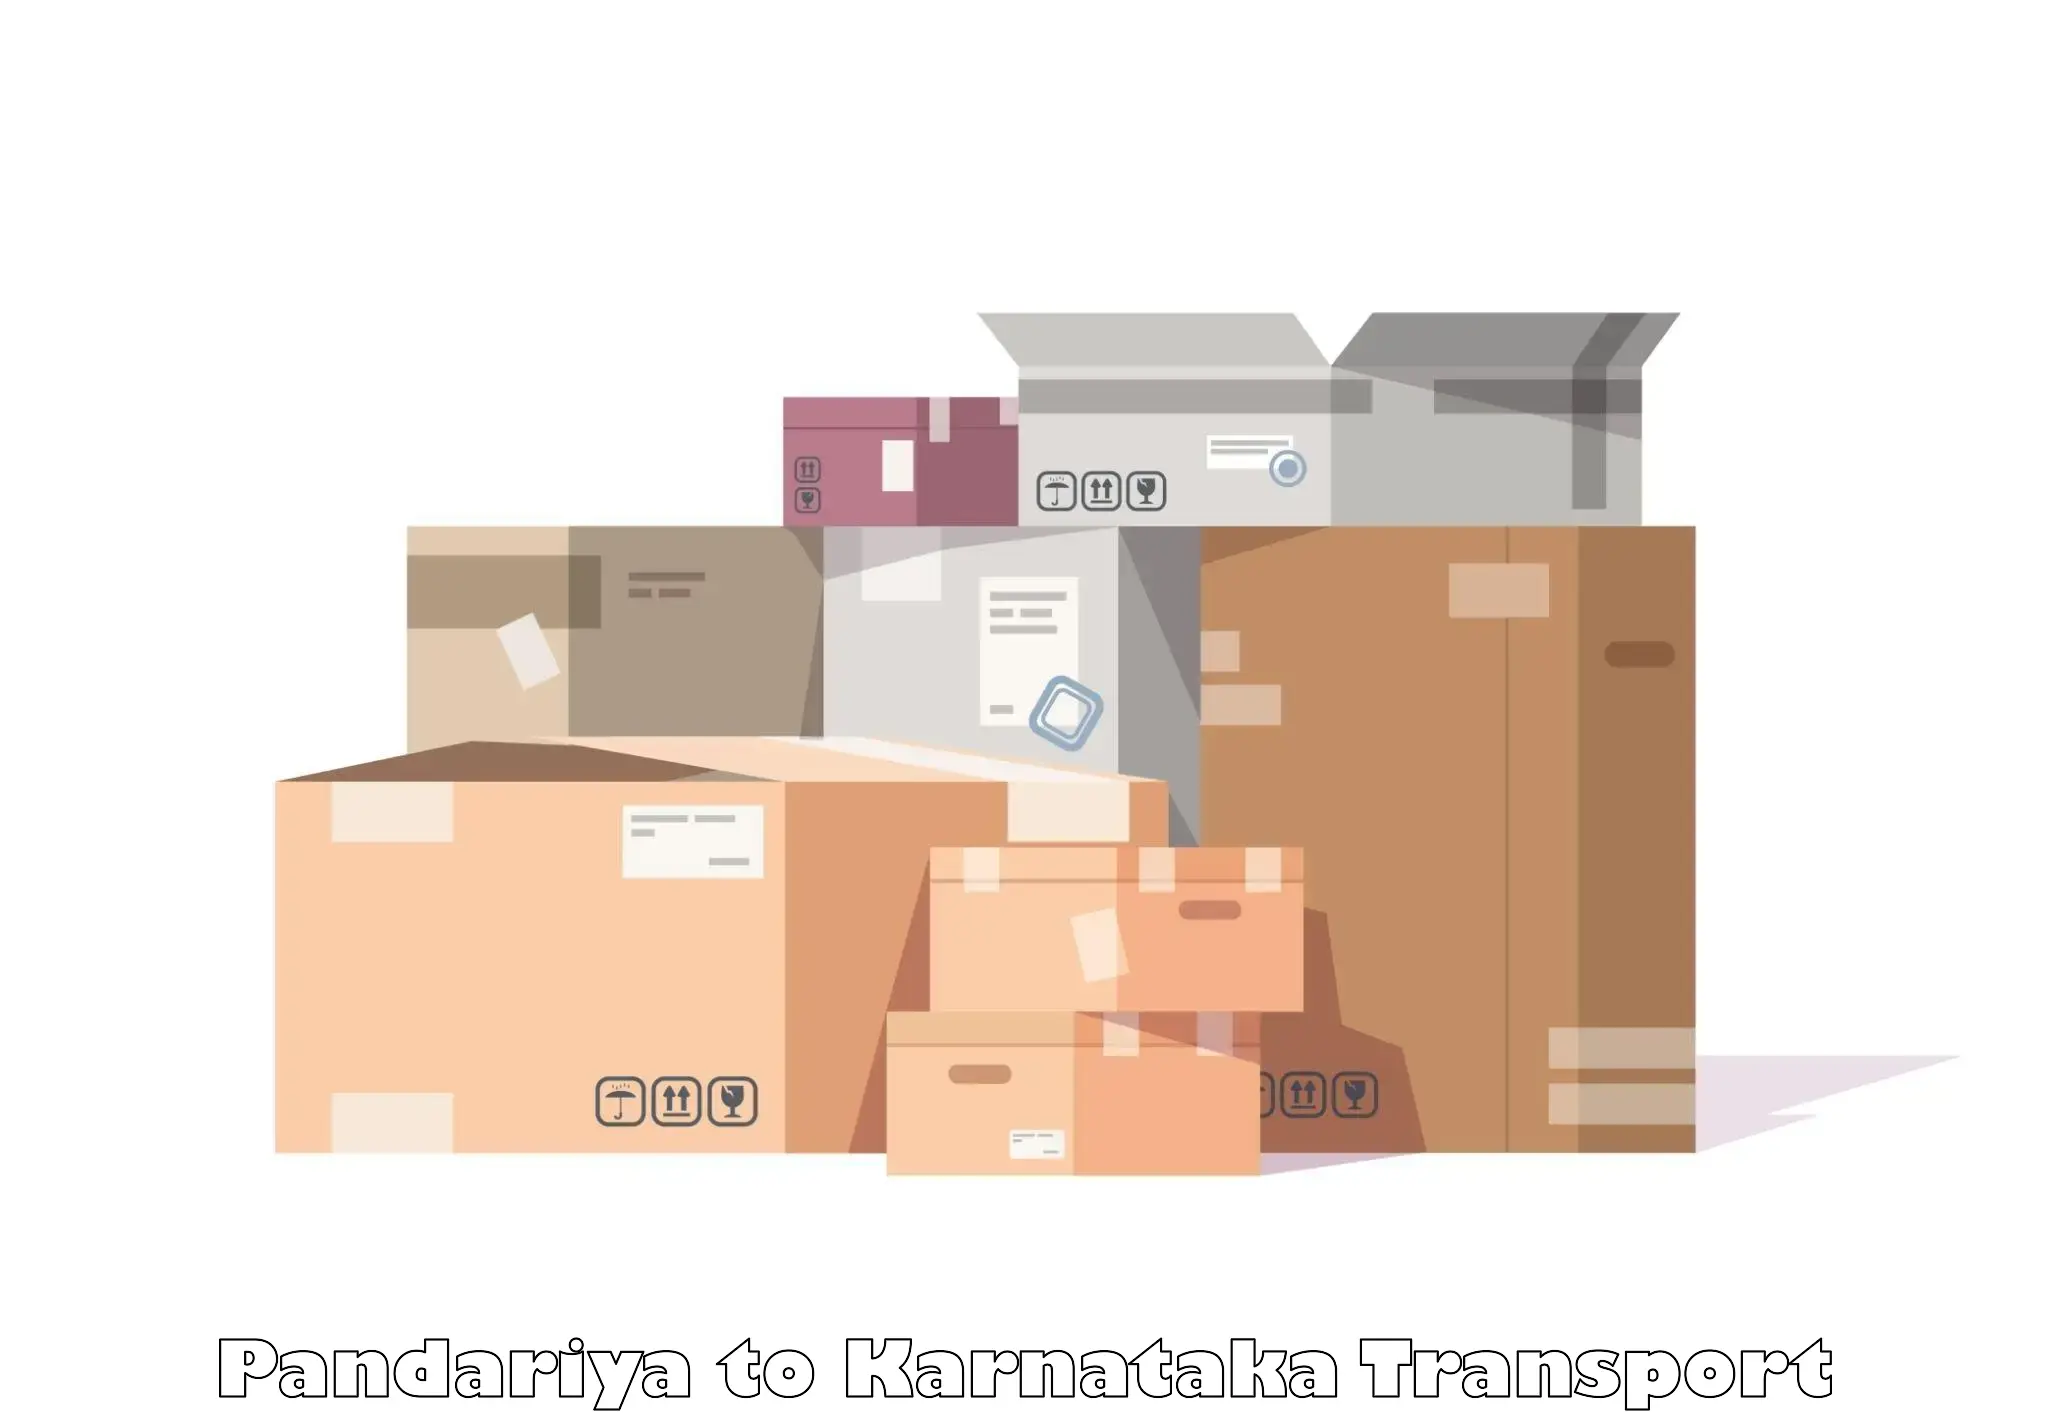 International cargo transportation services Pandariya to Bengaluru